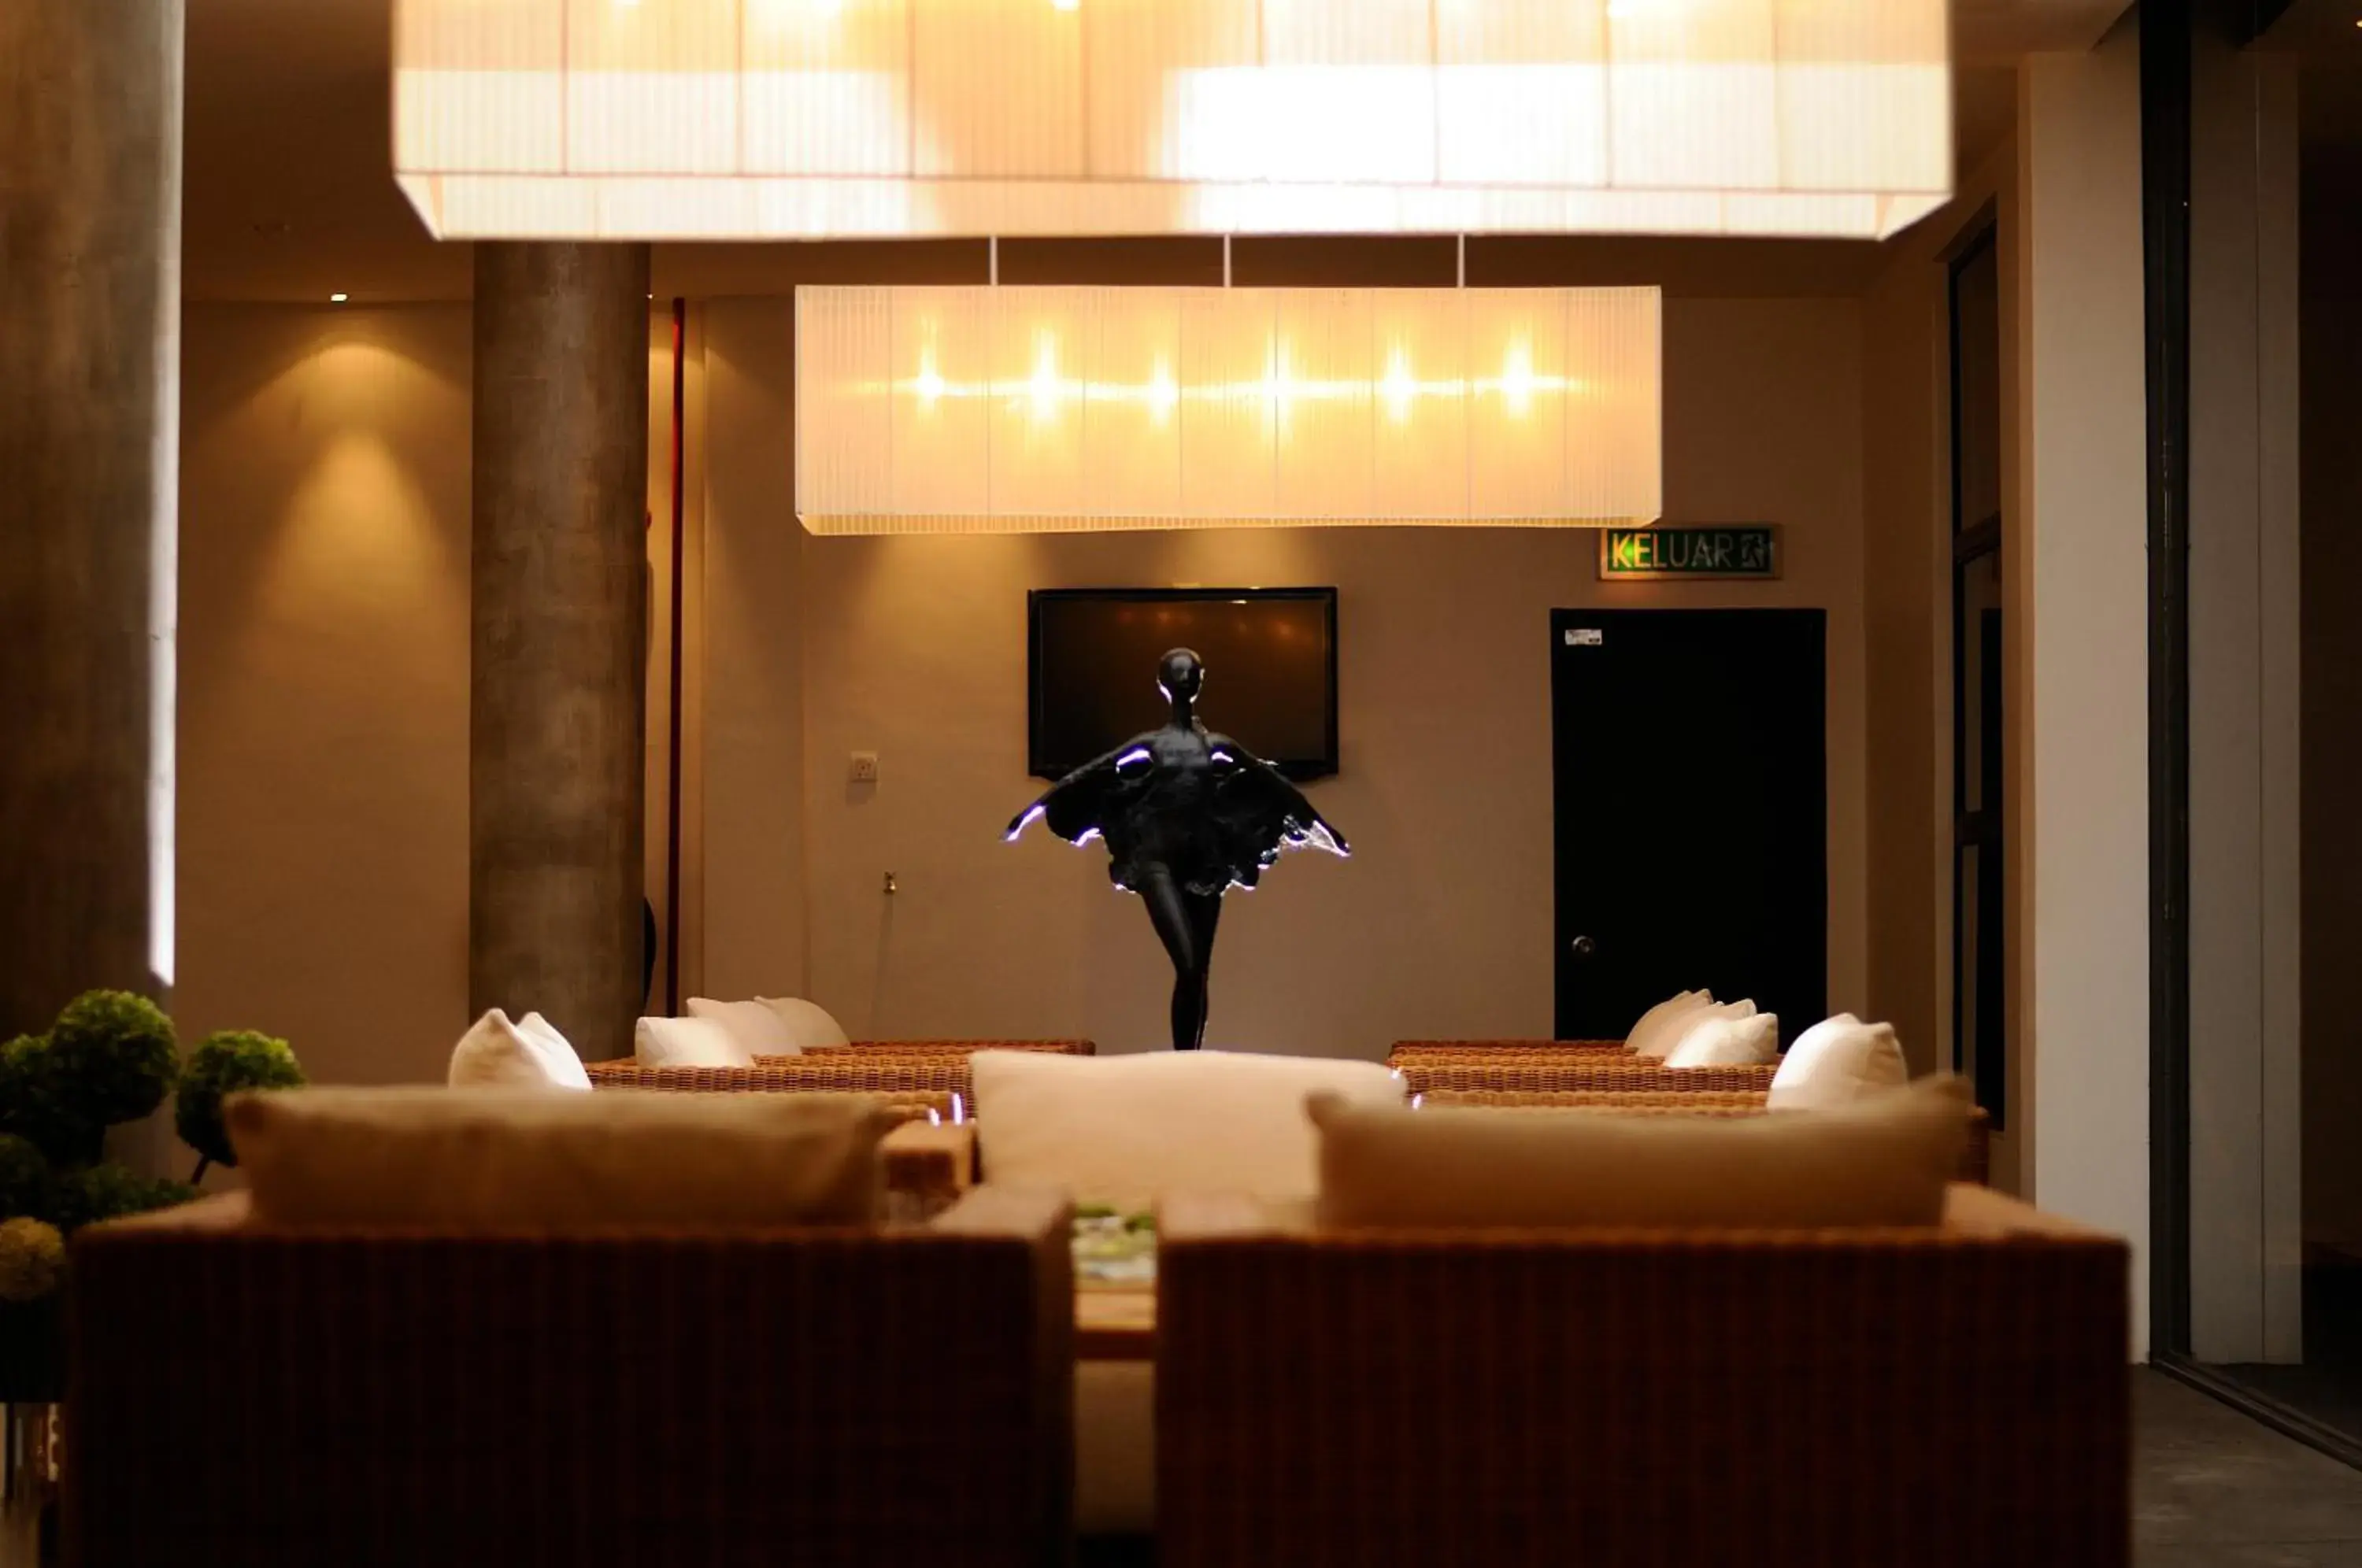 Lobby or reception, Lobby/Reception in T+ Hotel @ Alor Setar